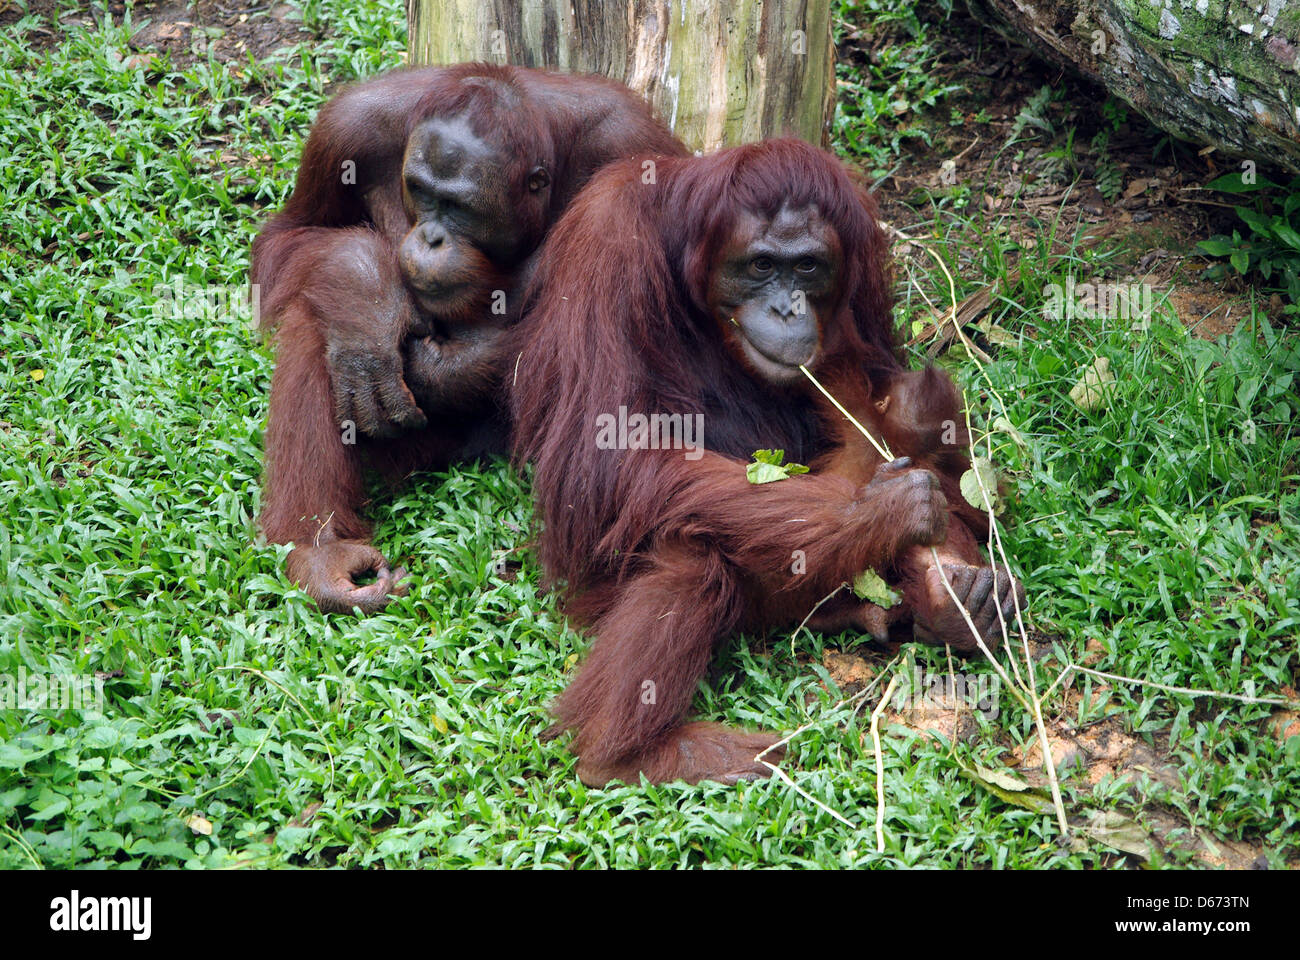 2 Deux orangs-outans s'asseoir manger en zoo de Singapour Banque D'Images